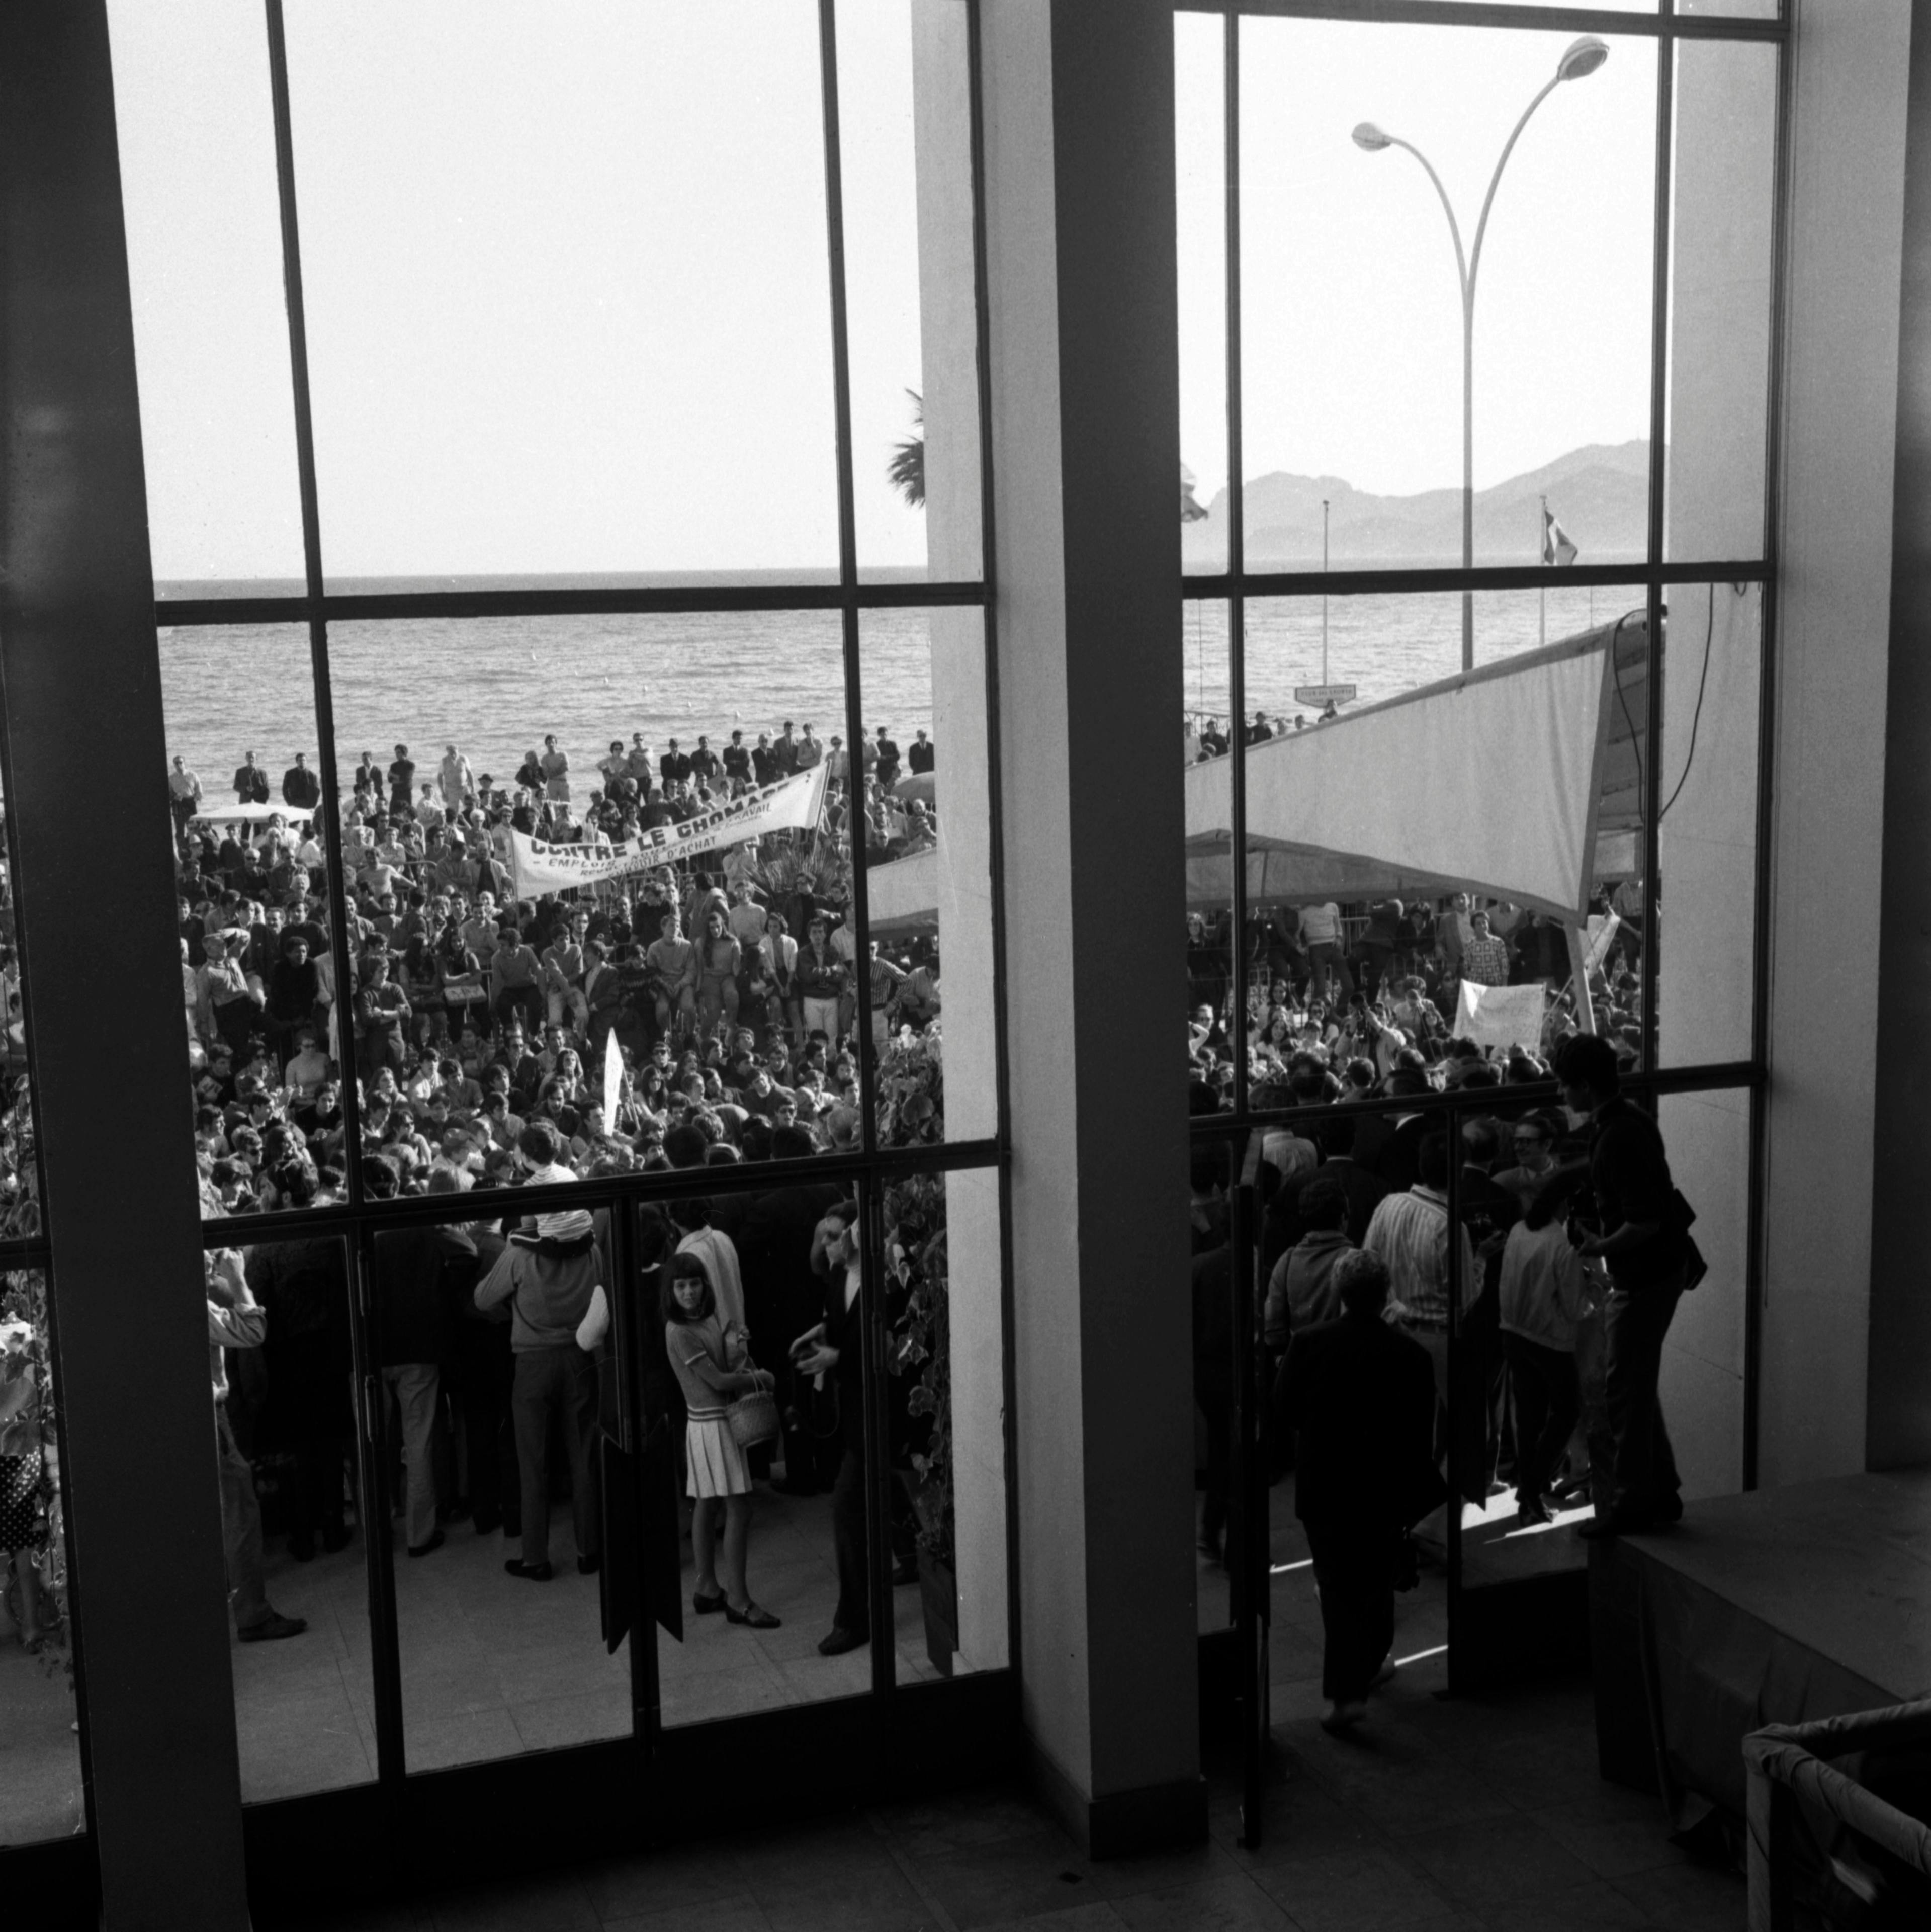 Manifestation devant le Palais des Festivals, Cannes 1968 - Getty Images